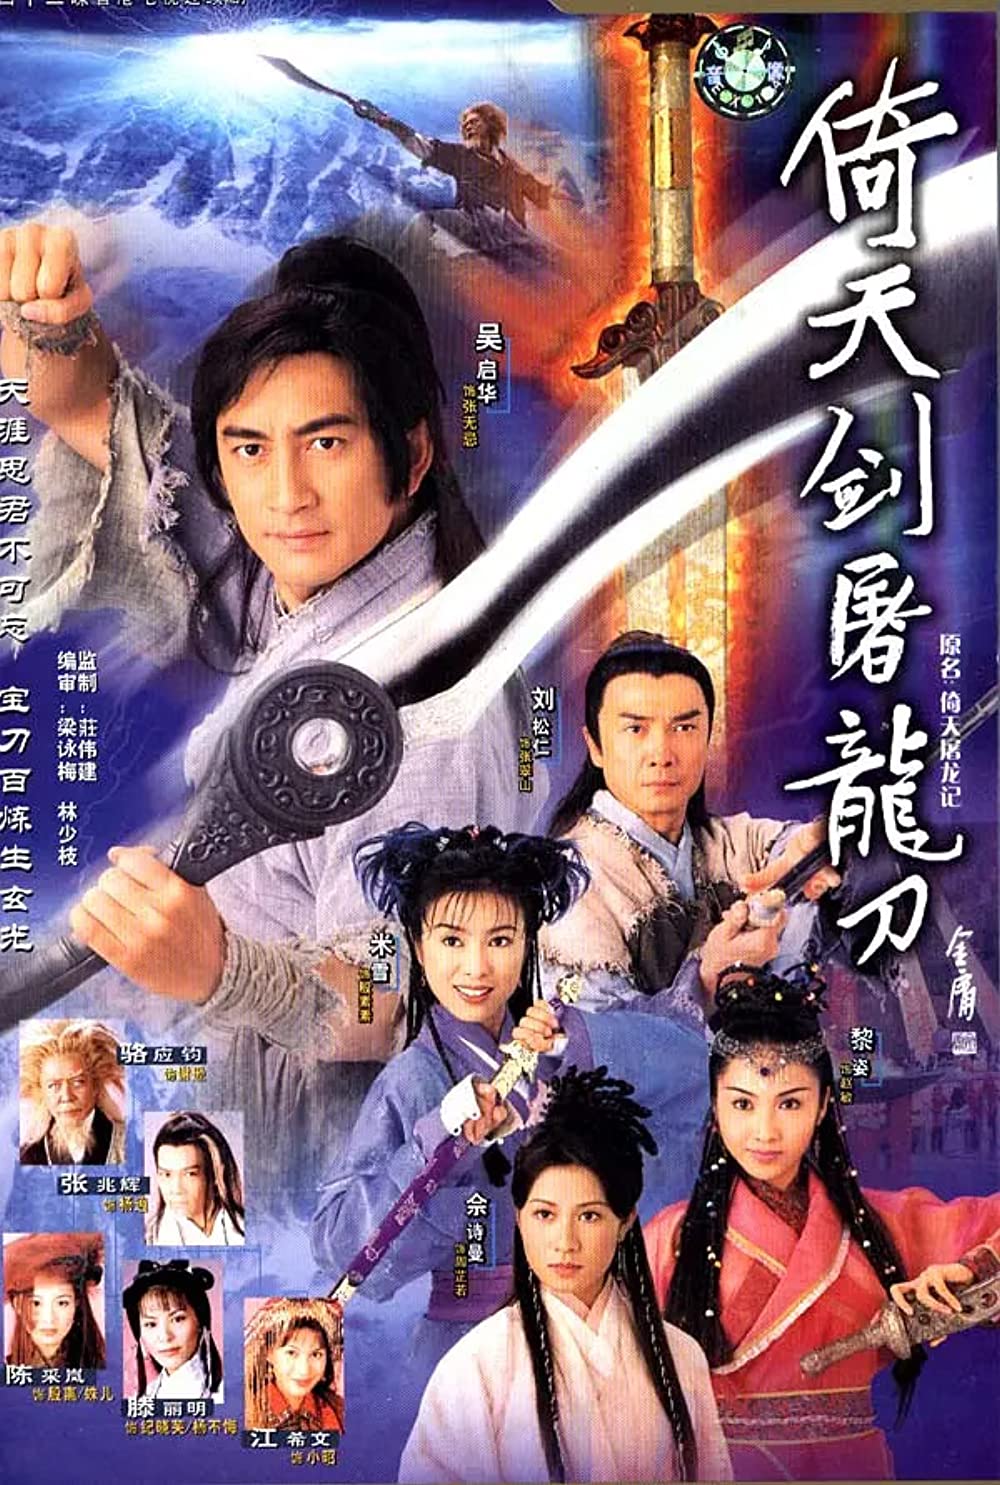 Ỷ Thiên Đồ Long ký - The Heavenly Sword and Dragon Saber (2001)